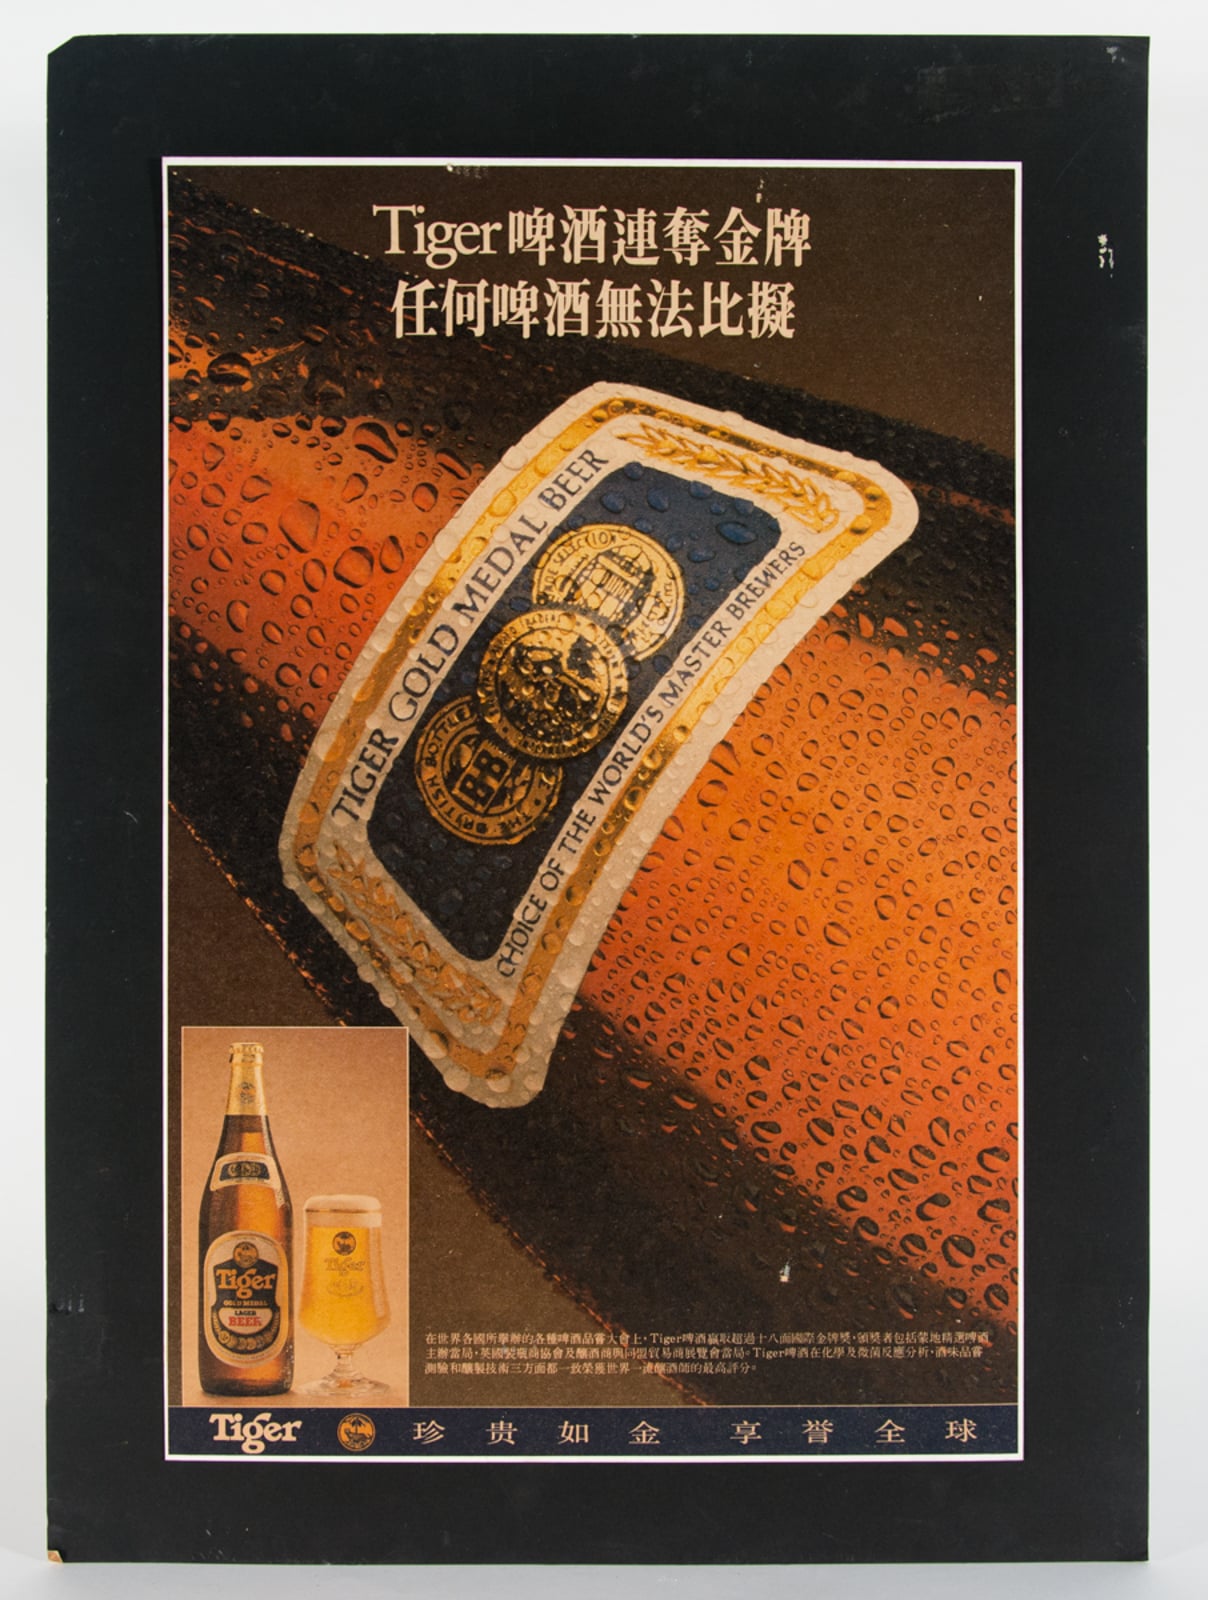 Tiger Gold Medal Beer Advertisement